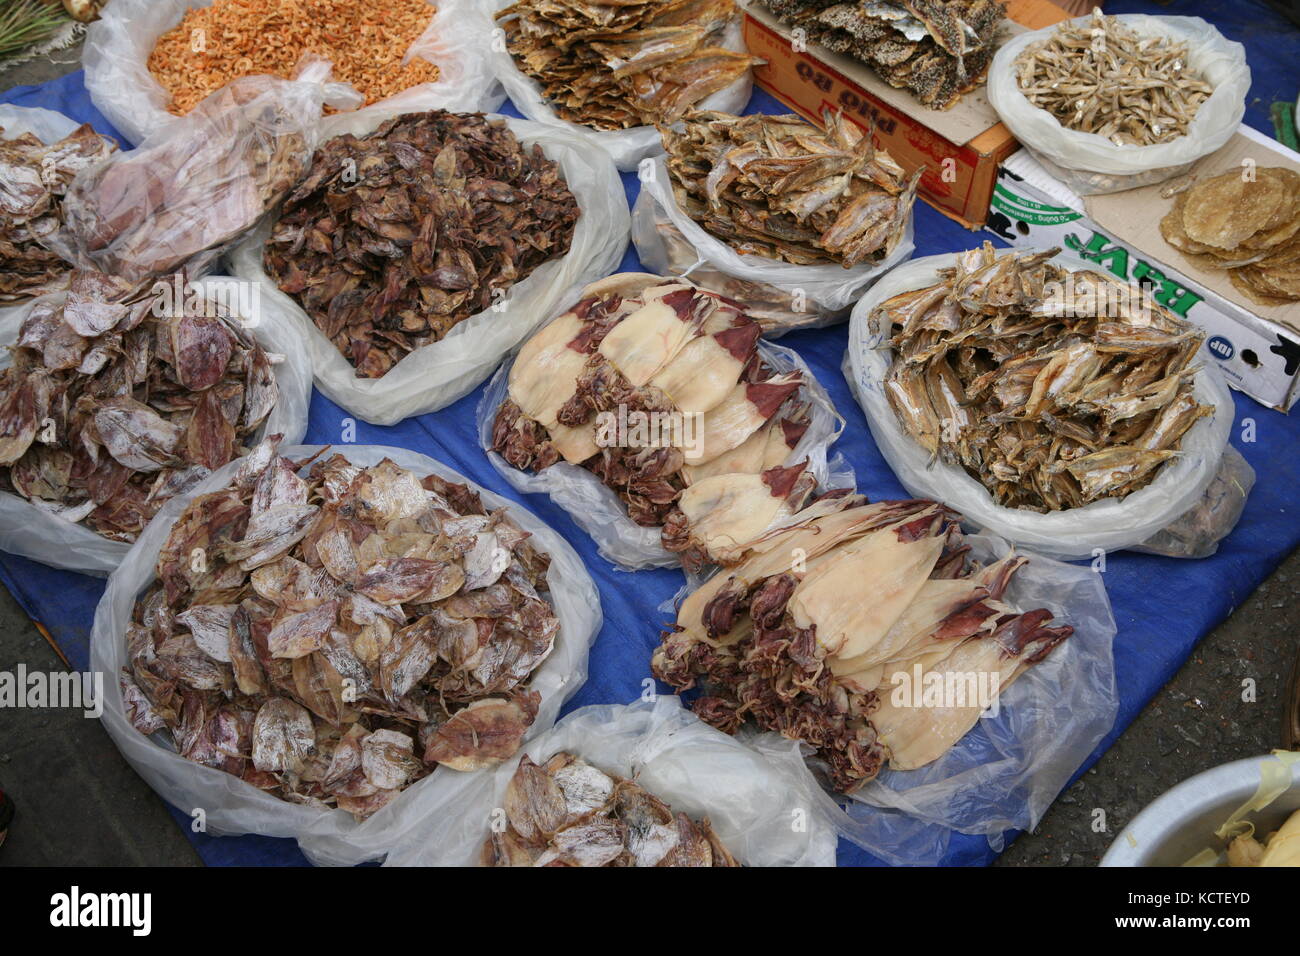 Getrockneter Fisch in asiatischem Markt - getrocknete Fische auf dem asiatischen Markt - Sepia, Tintenfisch, Tintenfisch Stockfoto